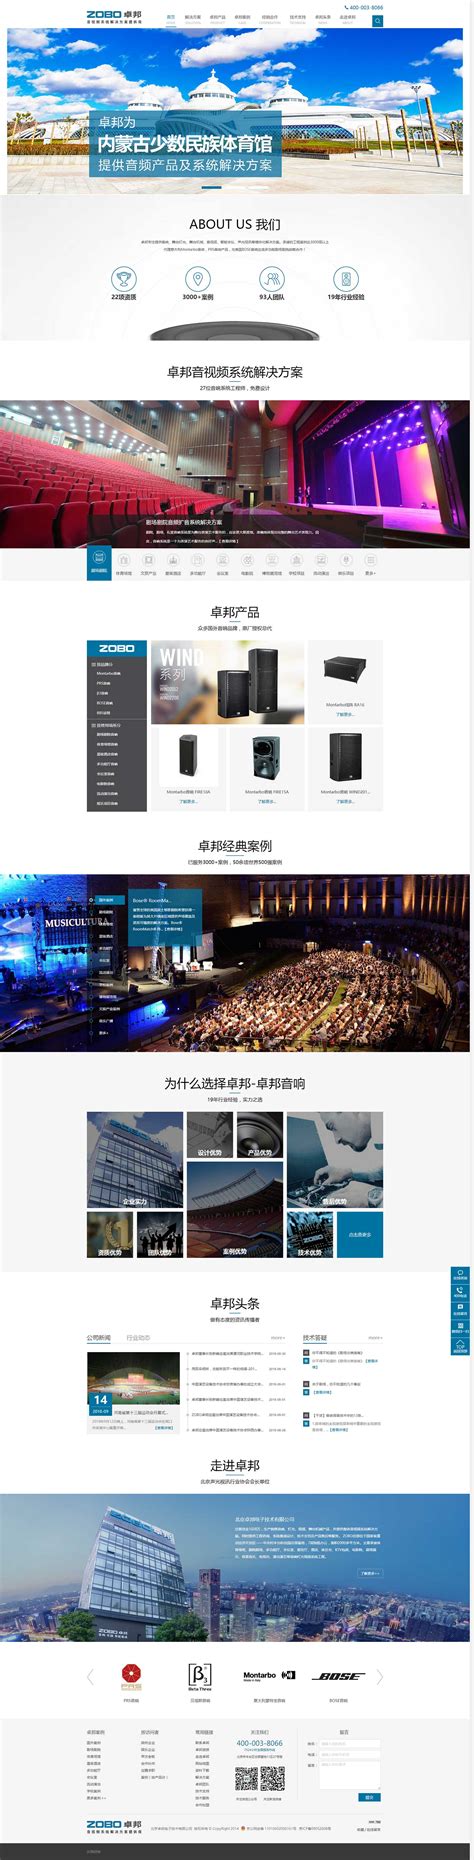 德青源_高端网站设计_客户案例_企惠云|北京|上海|广州|西宁